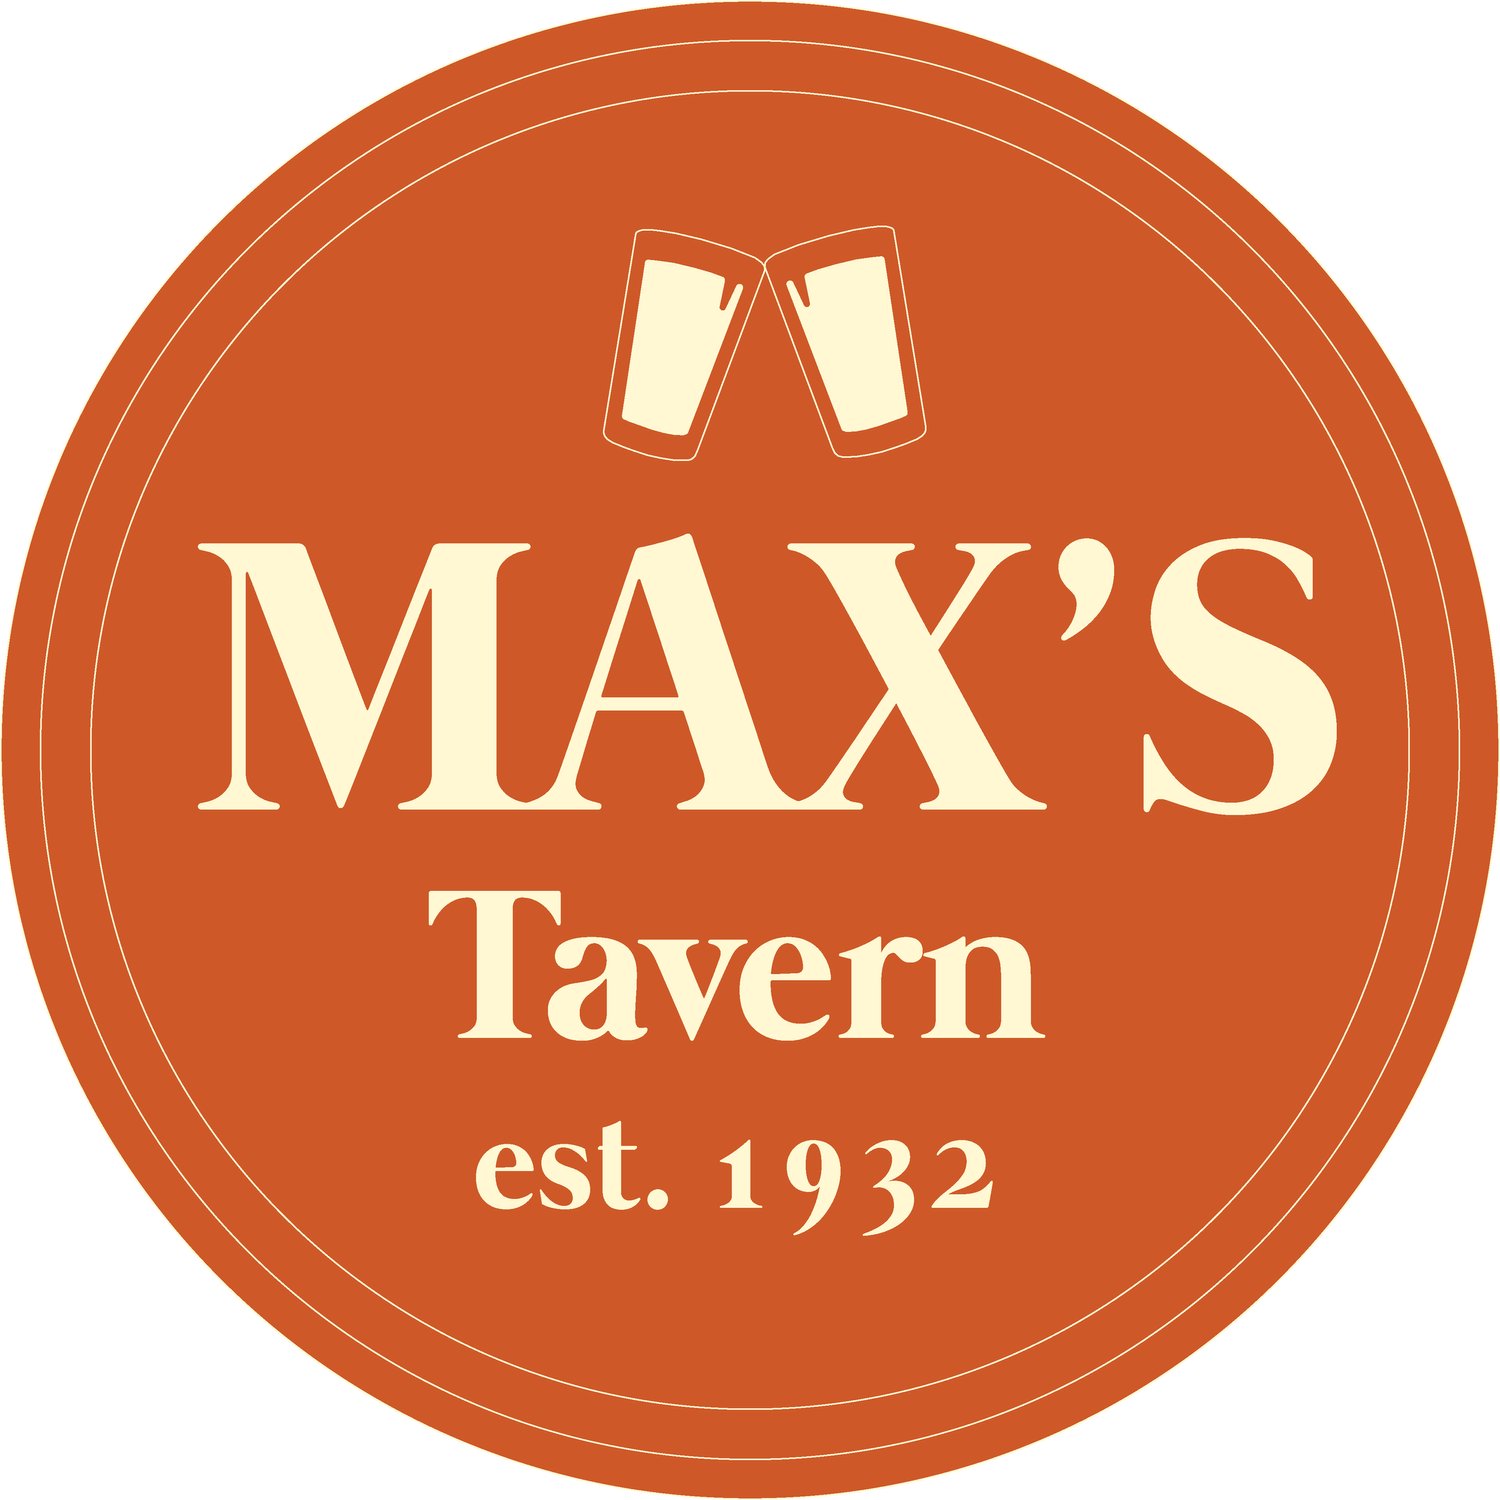 Max&#39;s tavern, eugene or